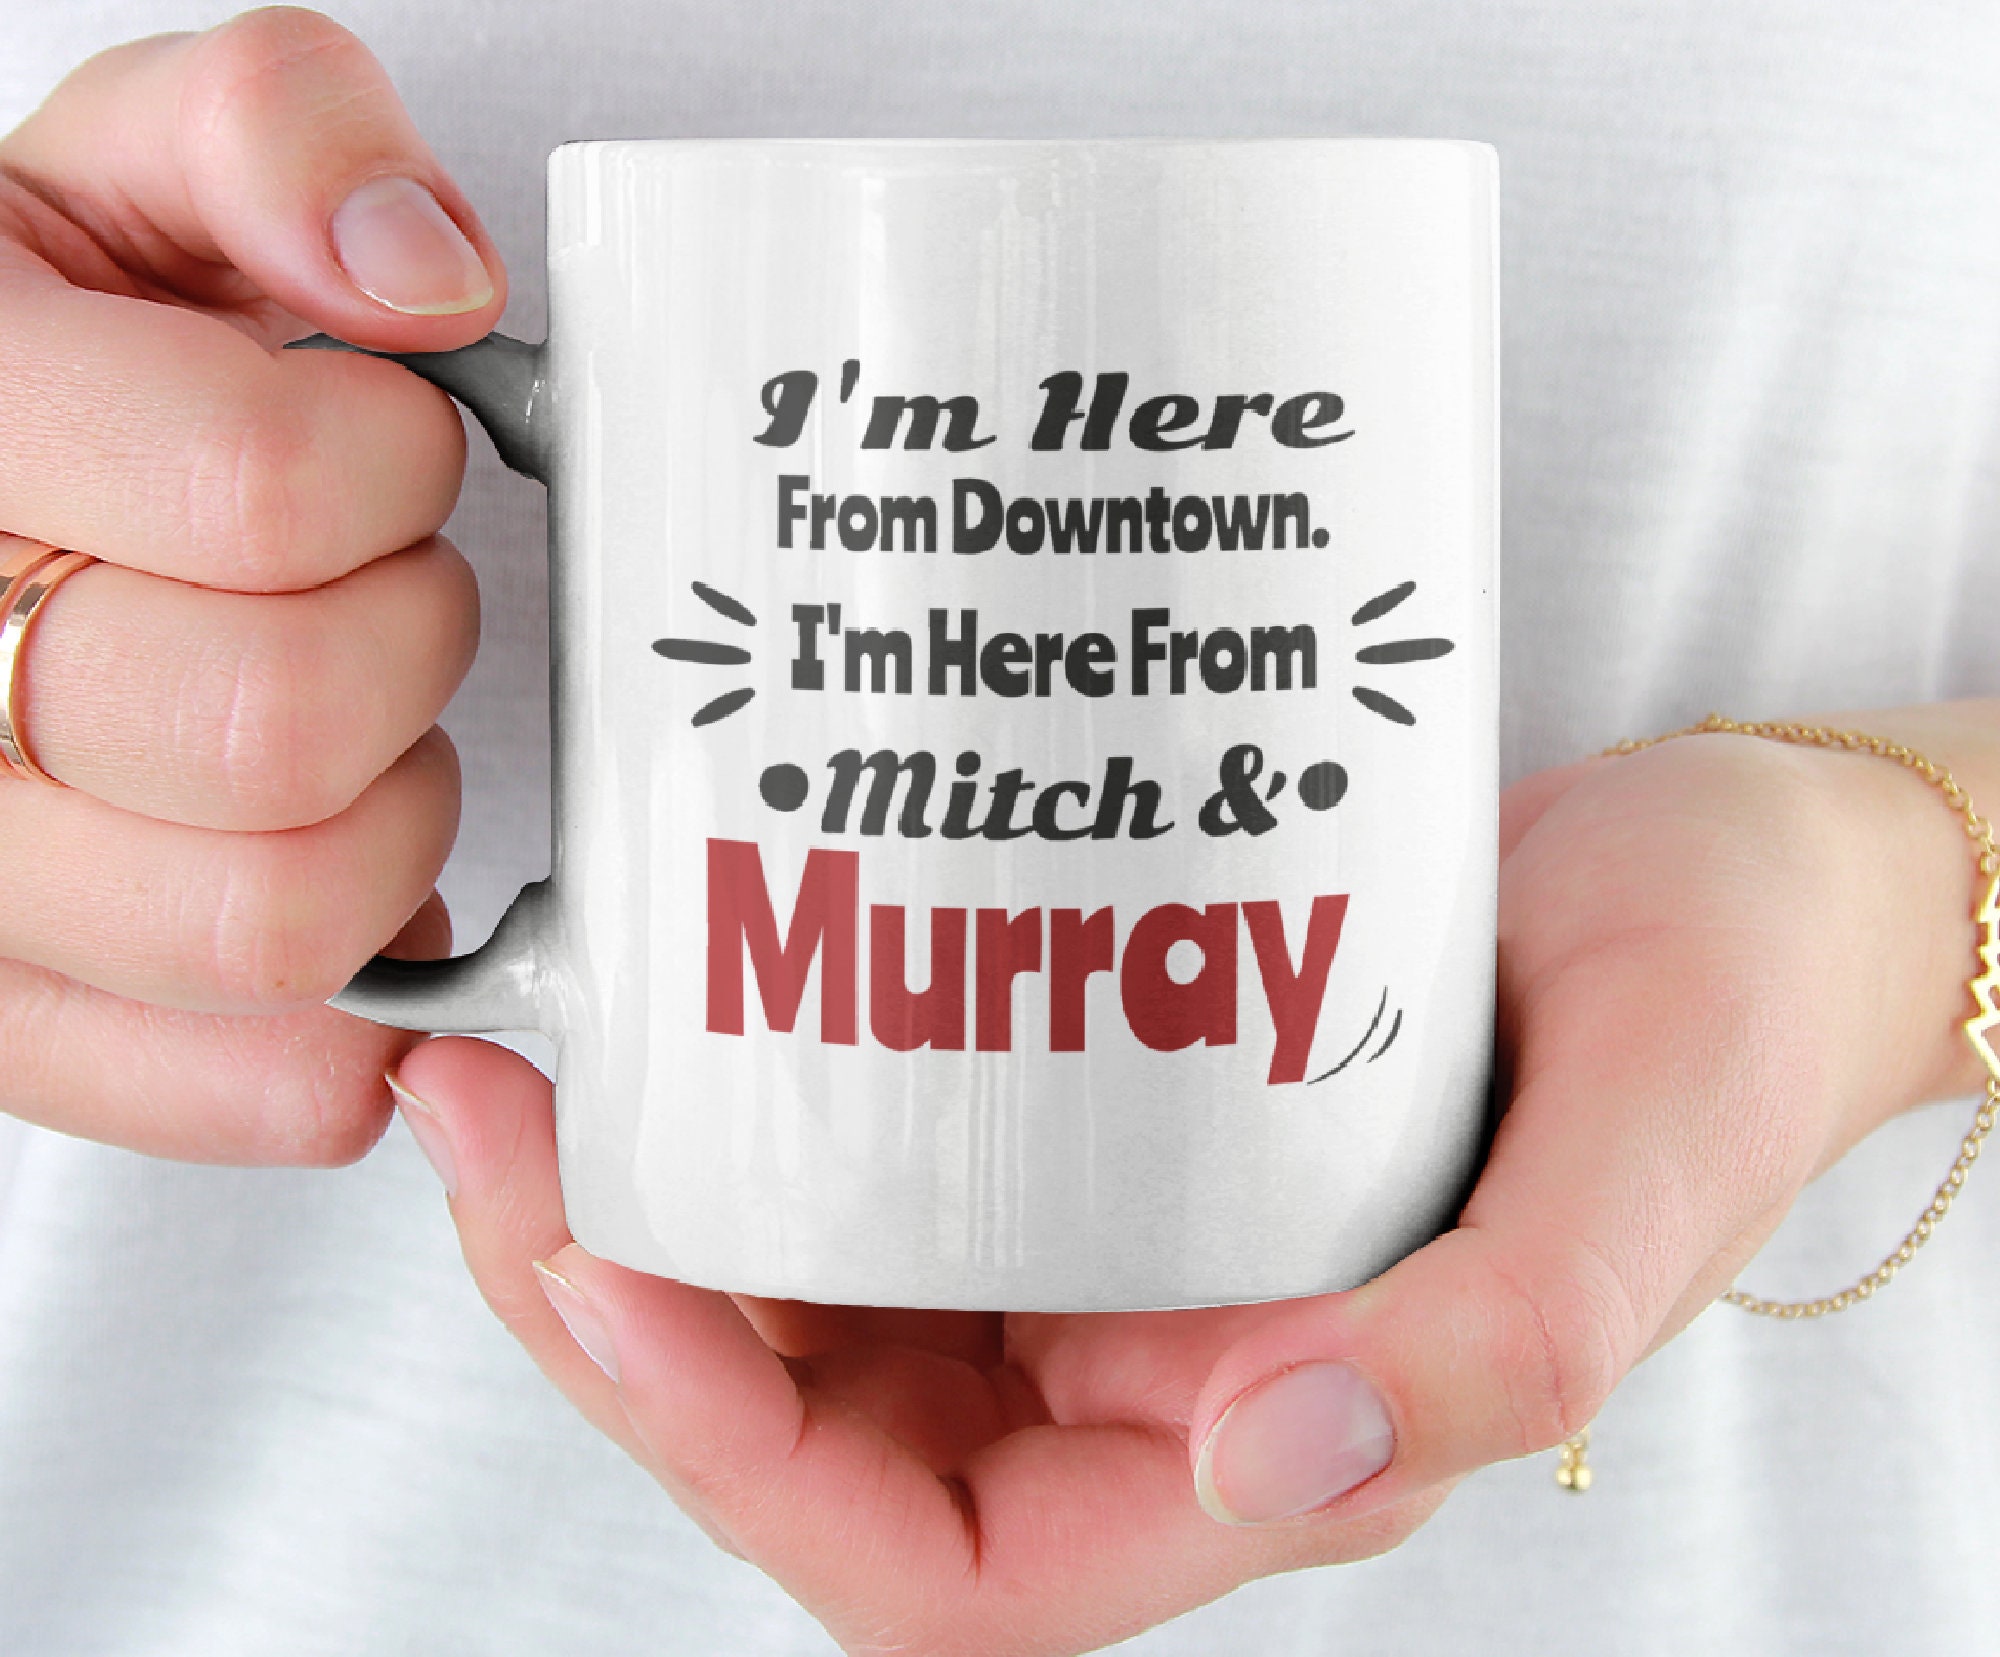 Chemex Murray Mug set